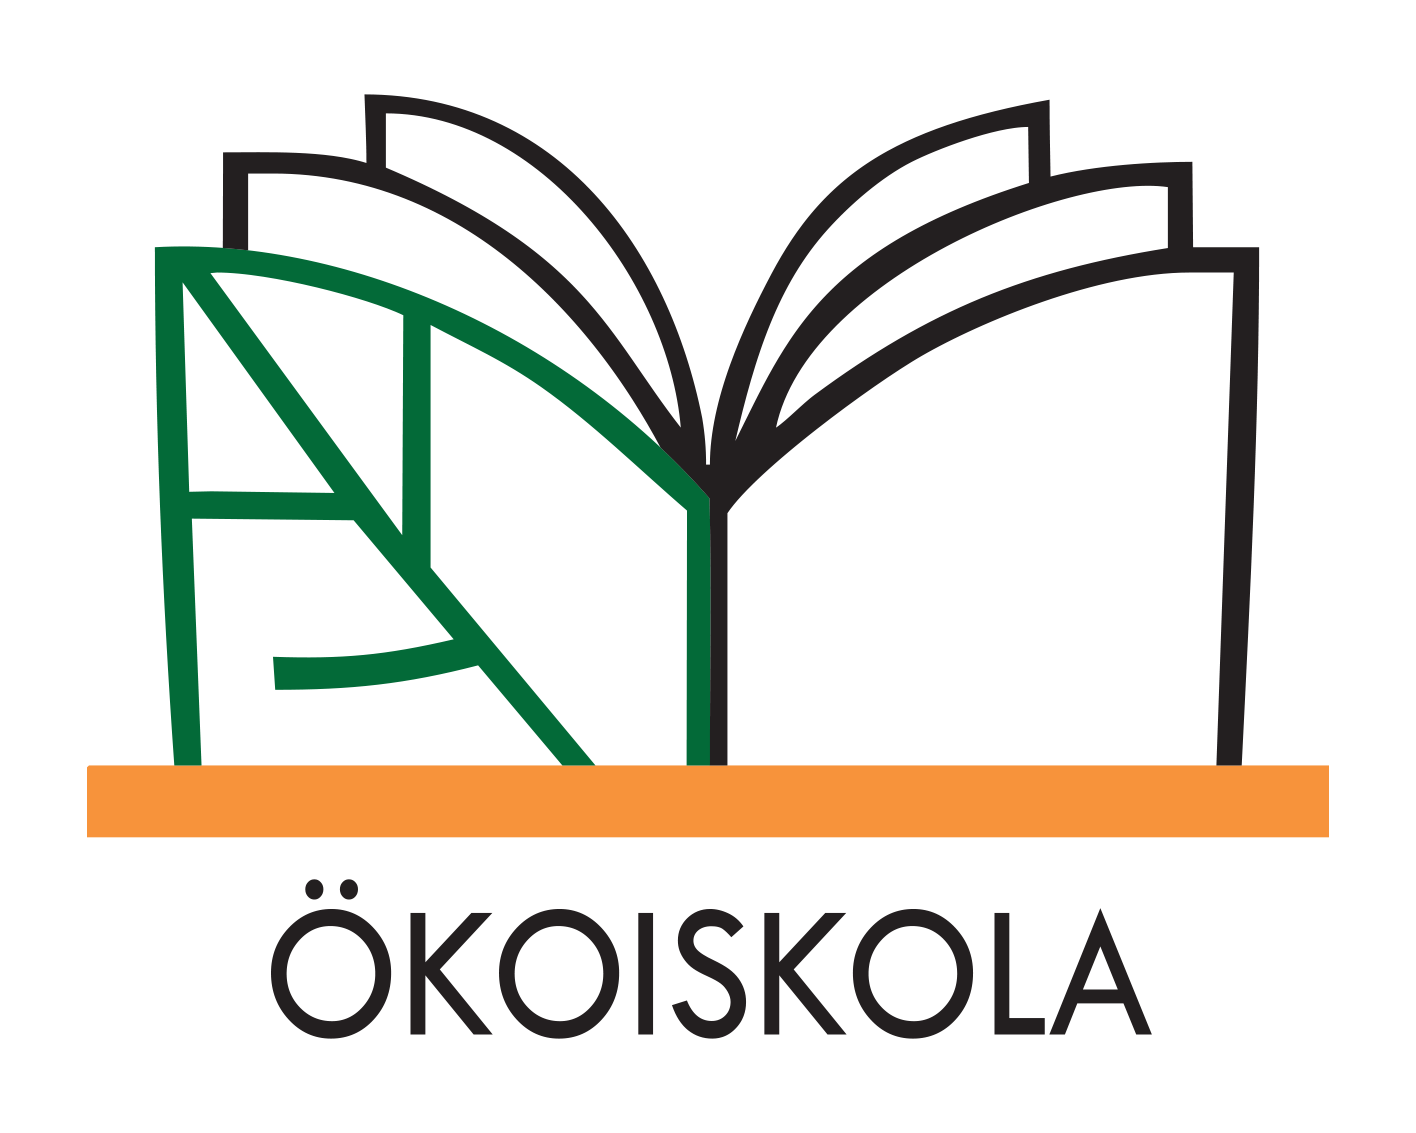 www.okoiskola.hu